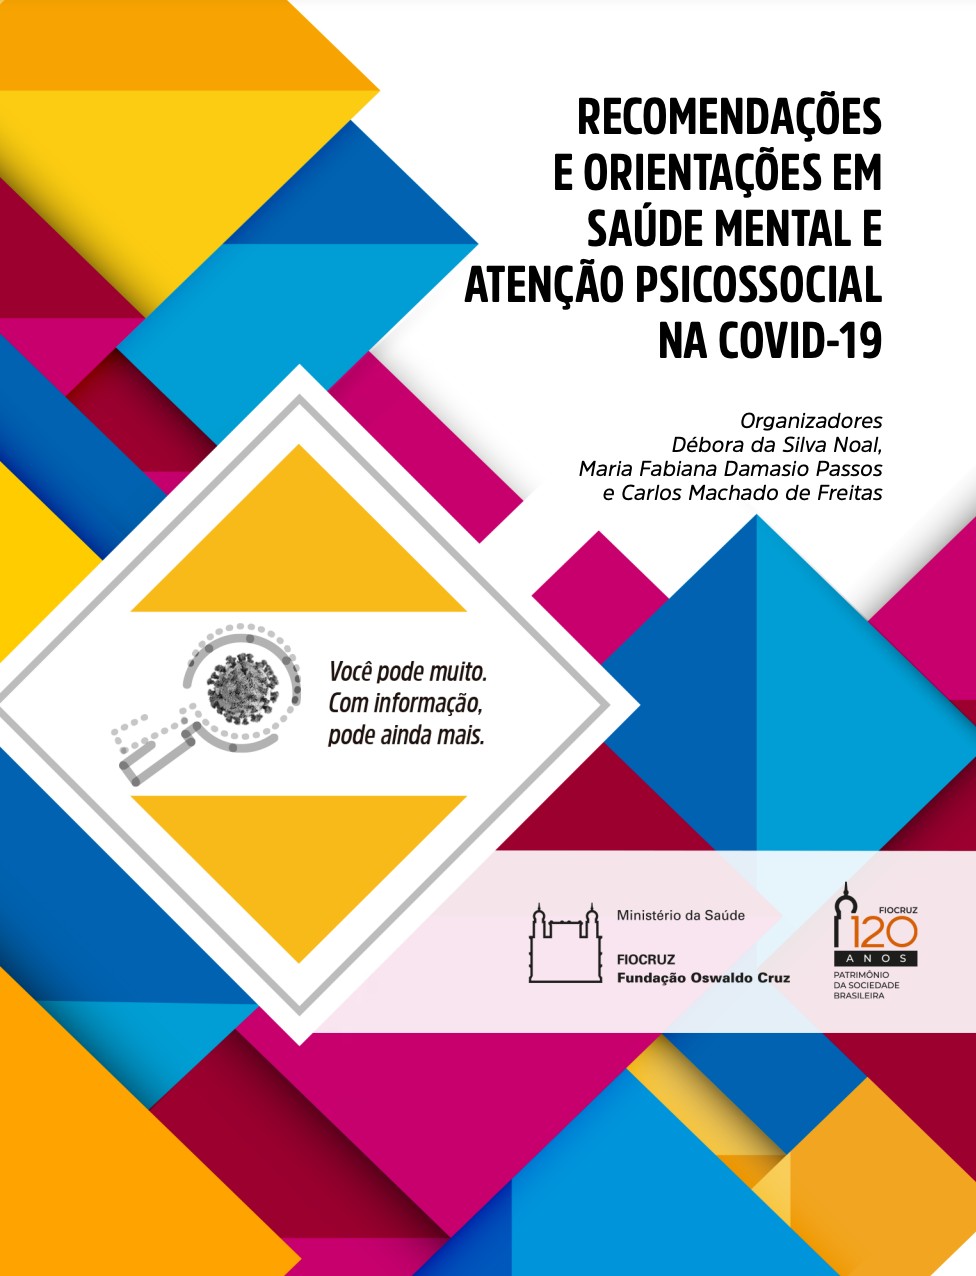 Recomendações e orientações em saúde mental e apoio psicossocial na Covid-19 (Foto: Reprodução)